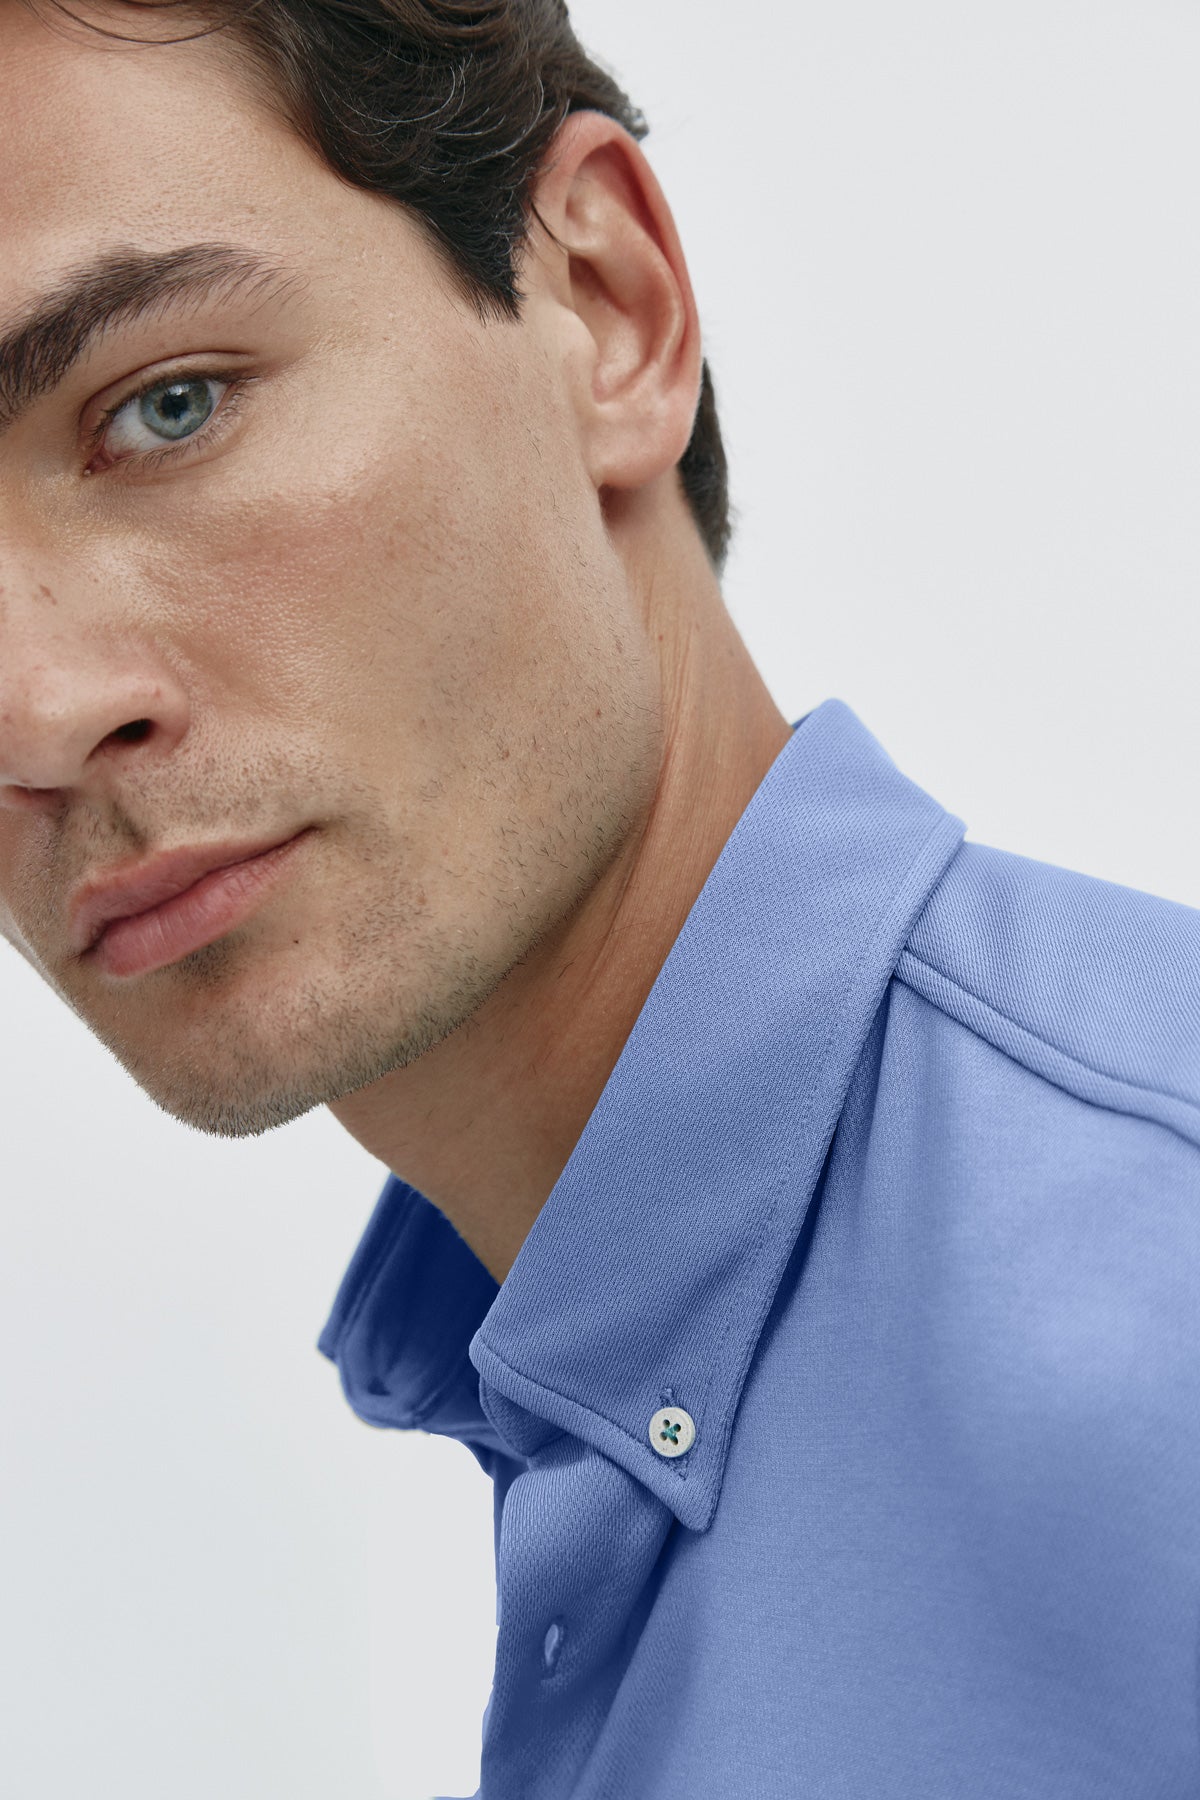 Camisa casual Azul acero para hombre sin arrugas ni manchas. Manga larga, antiarrugas y antimanchas. Foto retrato